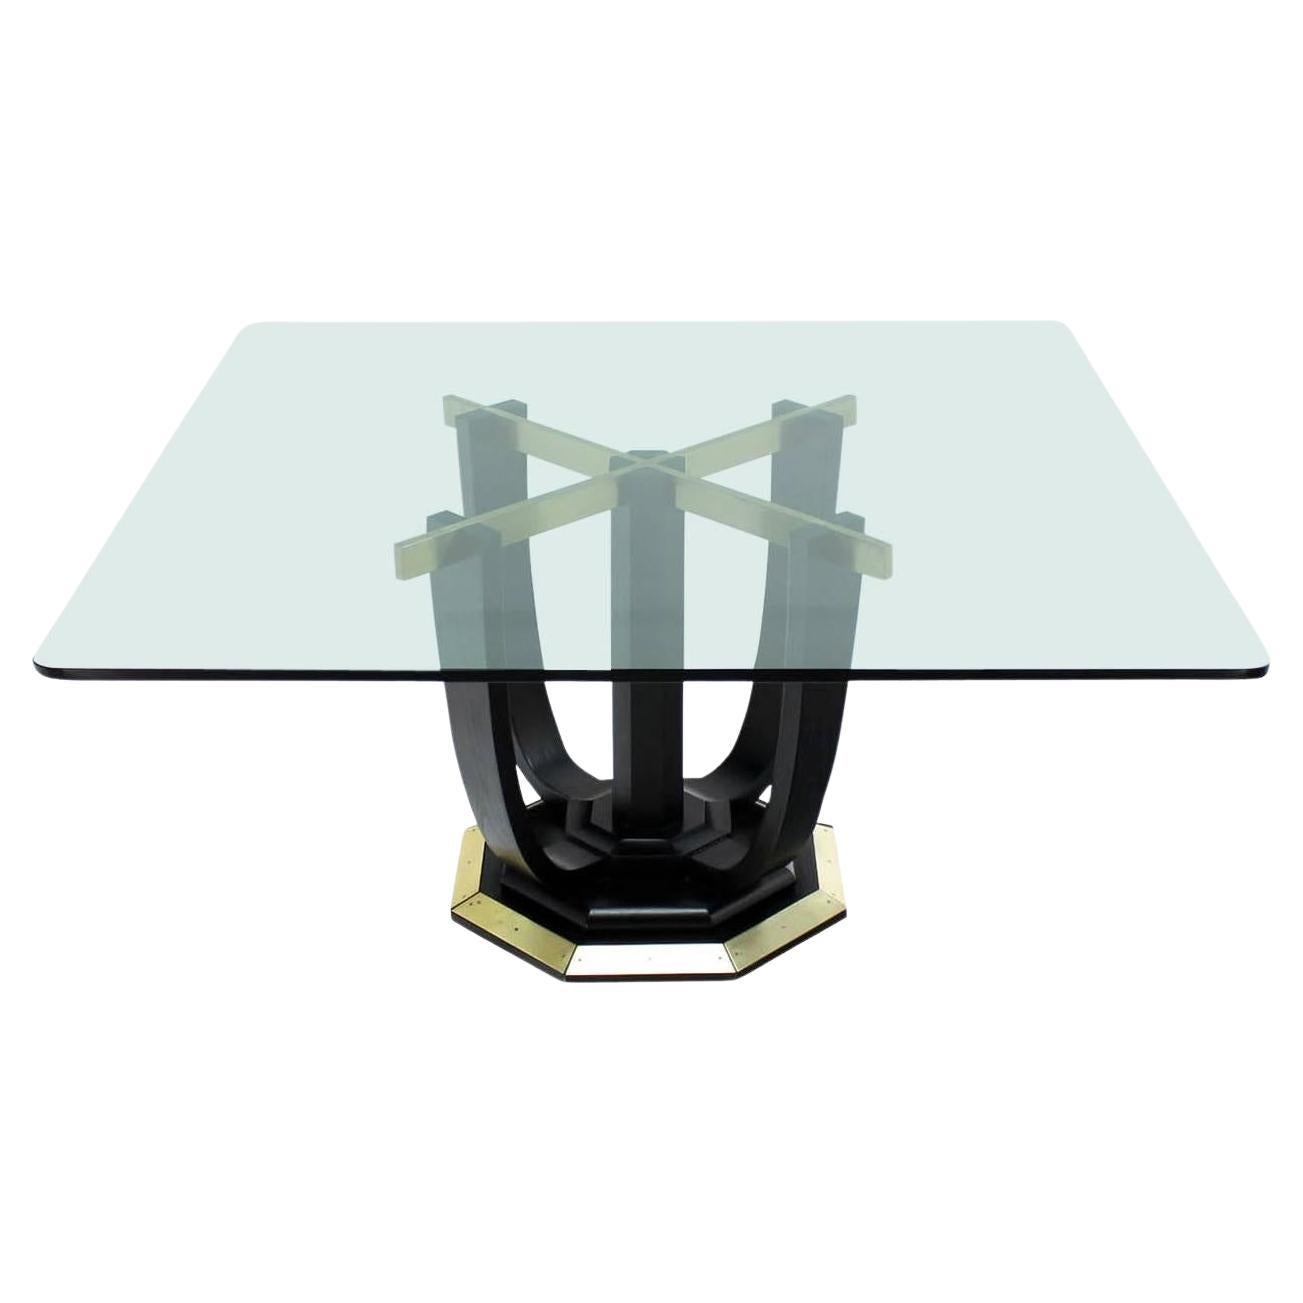 Großer quadratischer Esstisch mit Glasplatte und schwarzem Lack und Messingfuß, Konferenztisch MINT